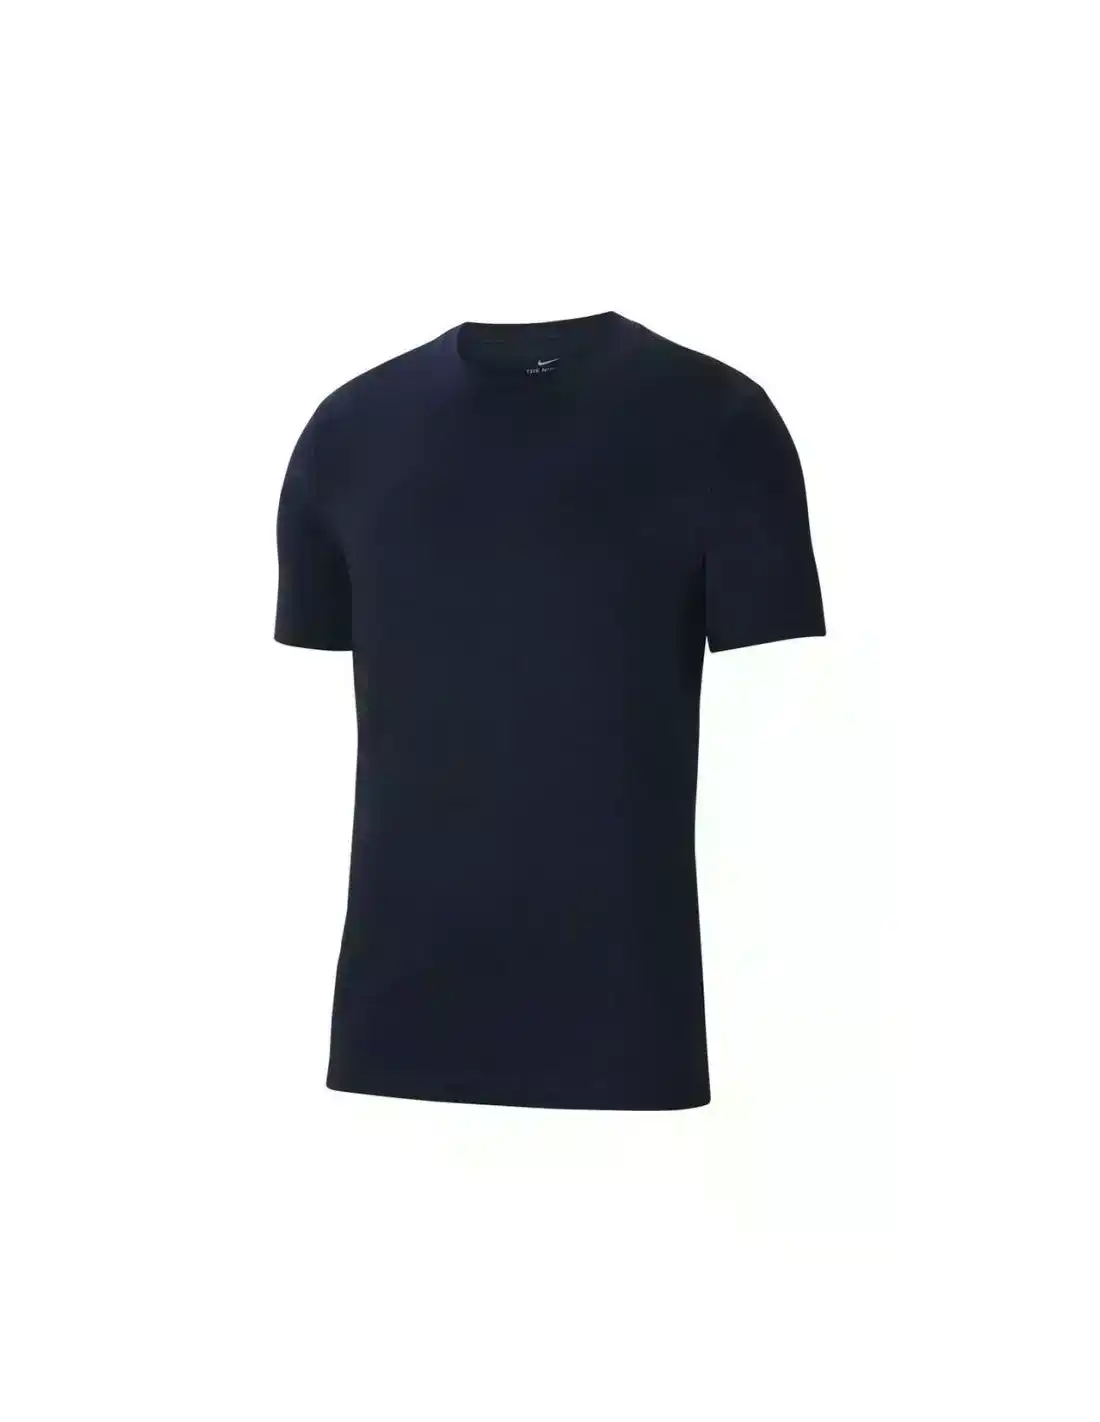 4 x Nike Park 20 T-Shirt Training Athletic Sportswear Obsidian Blue